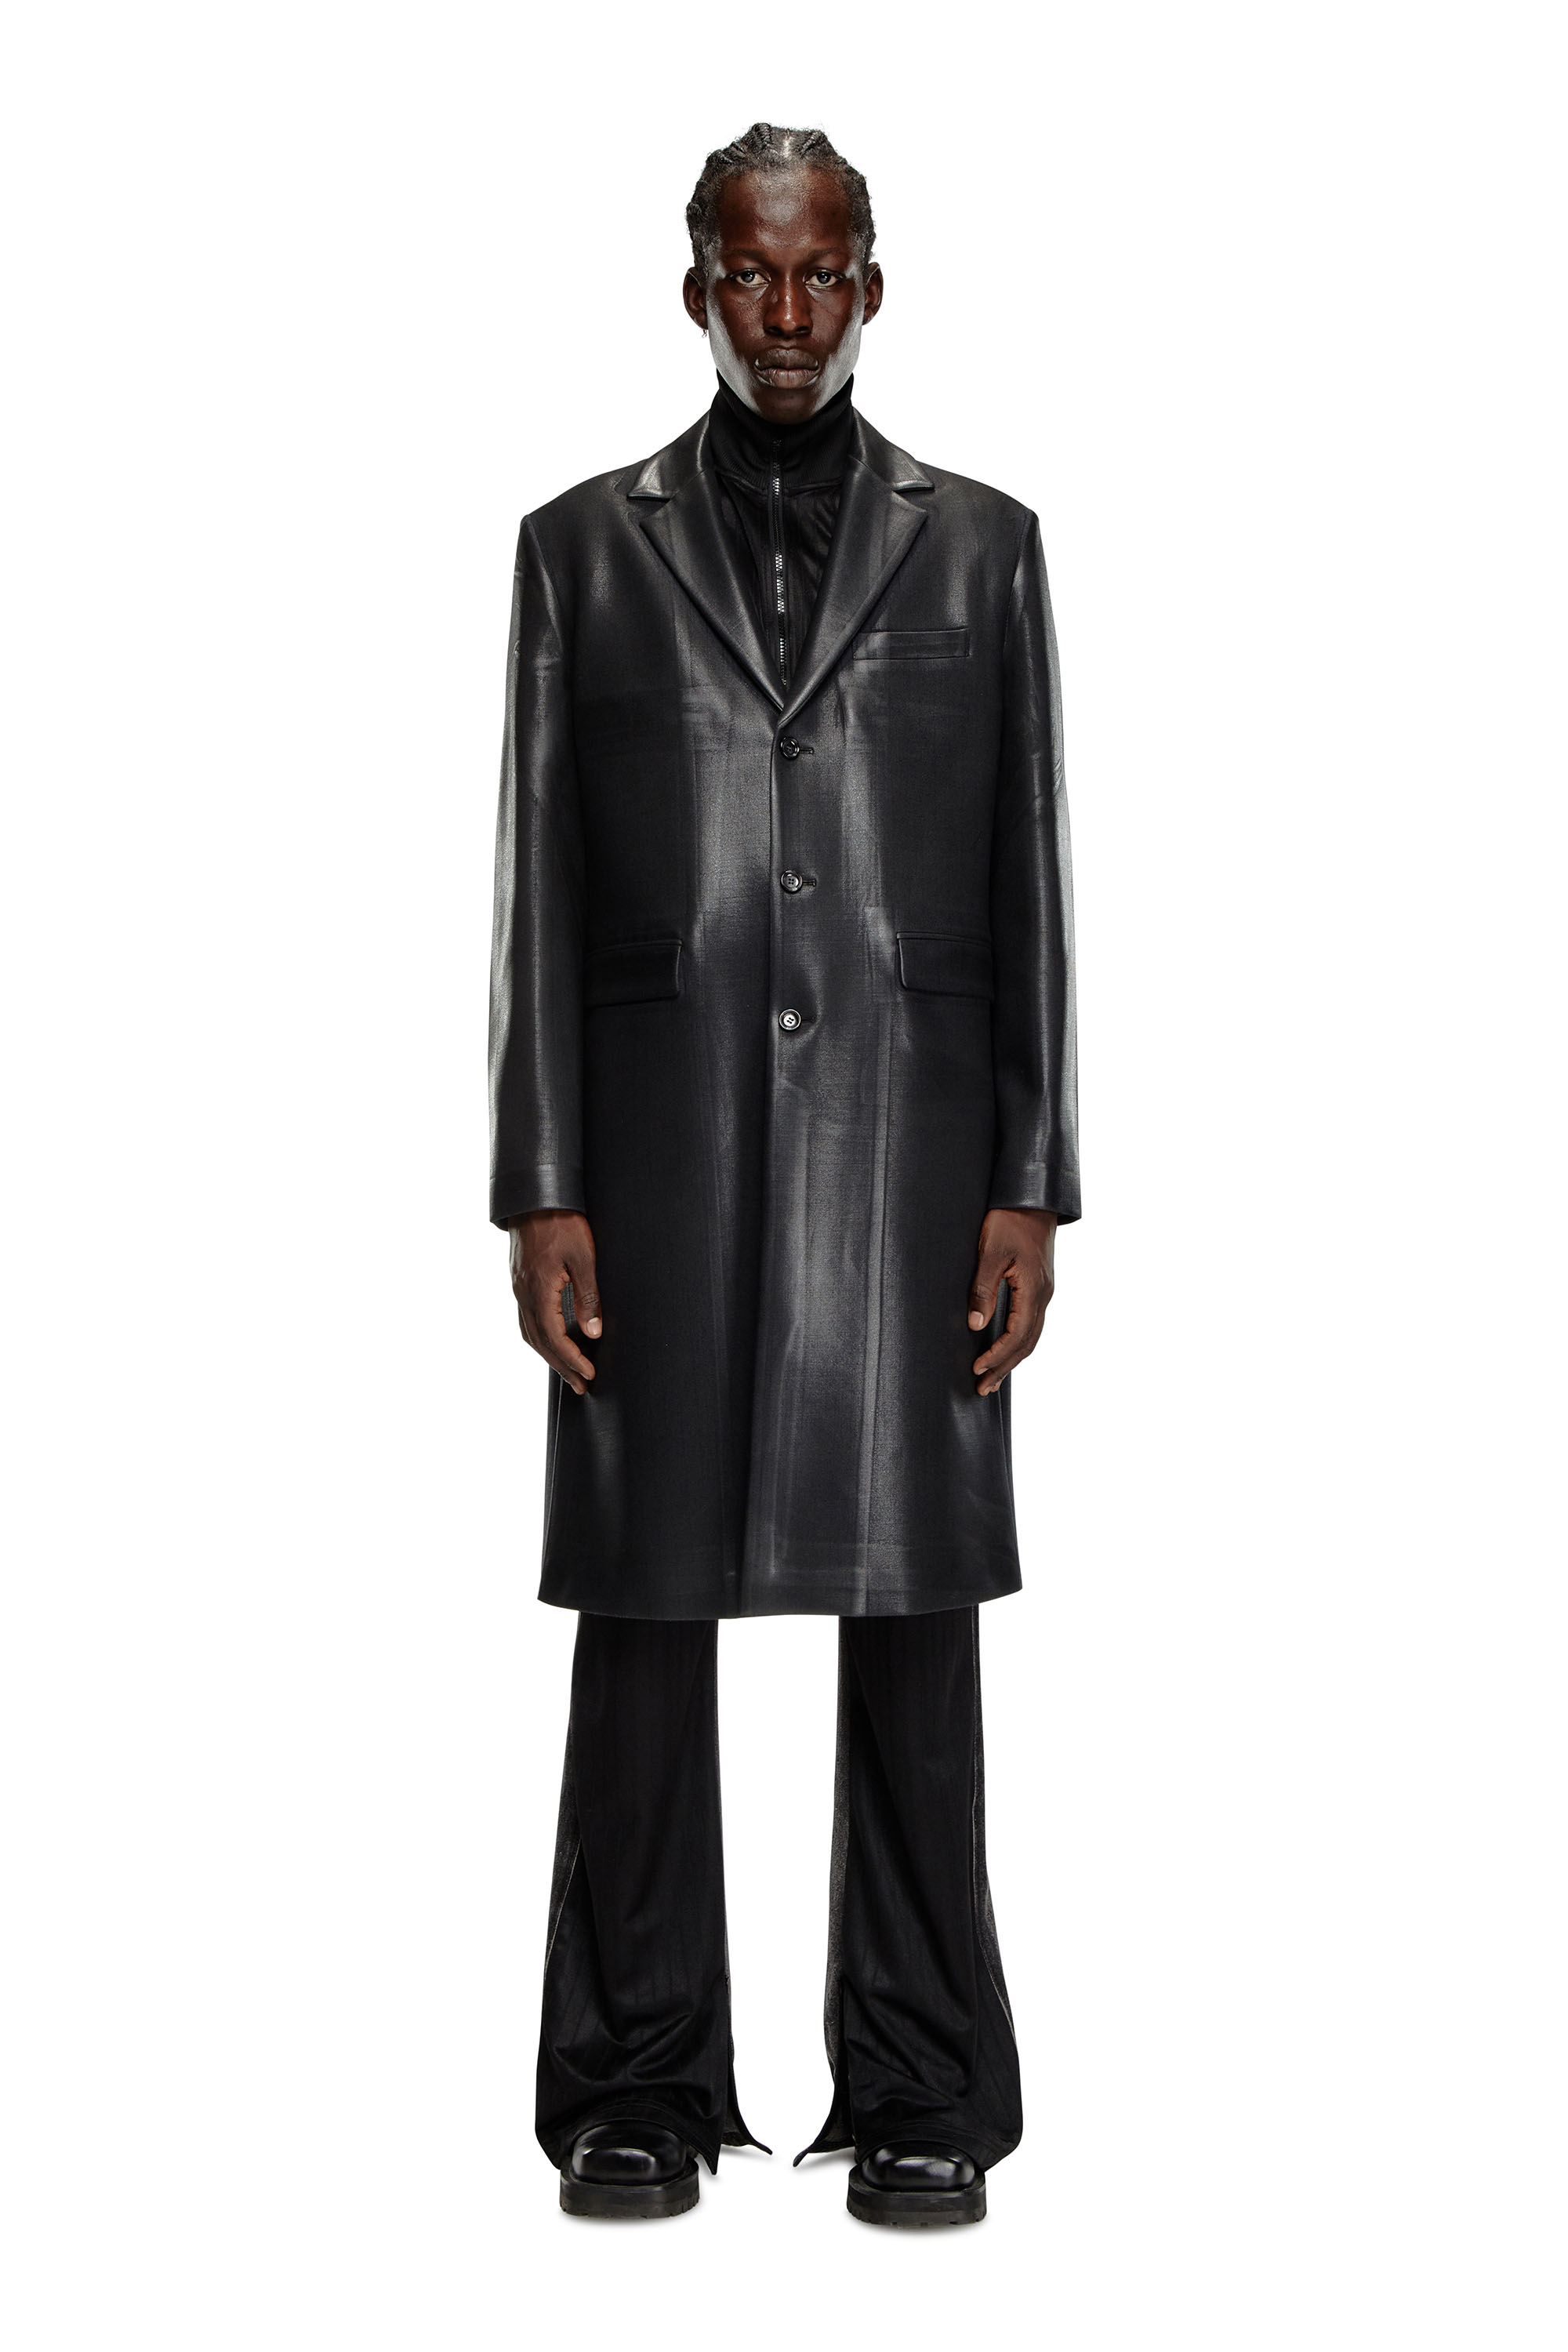 Diesel - J-DENNER, Man Coat in pinstriped cool wool in Black - Image 1